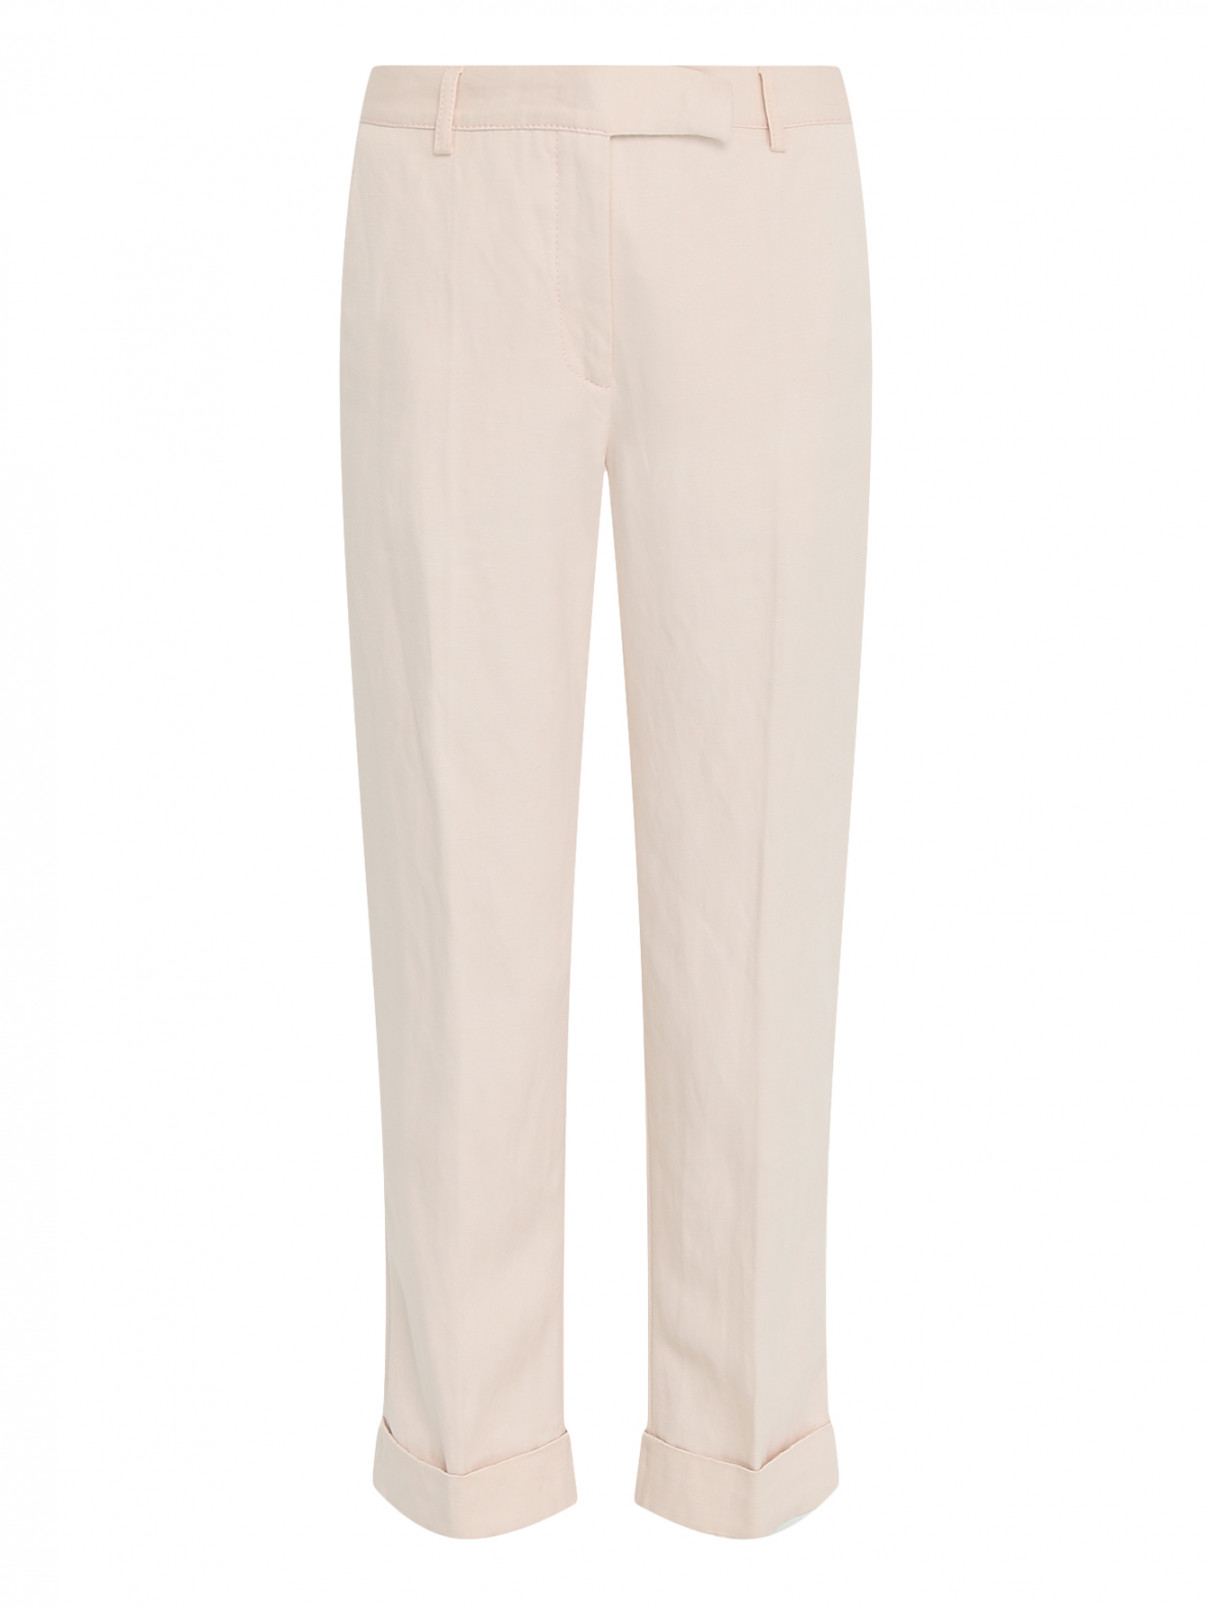 Укороченные брюки из льна Philosophy di Lorenzo Serafini  –  Общий вид  – Цвет:  Розовый